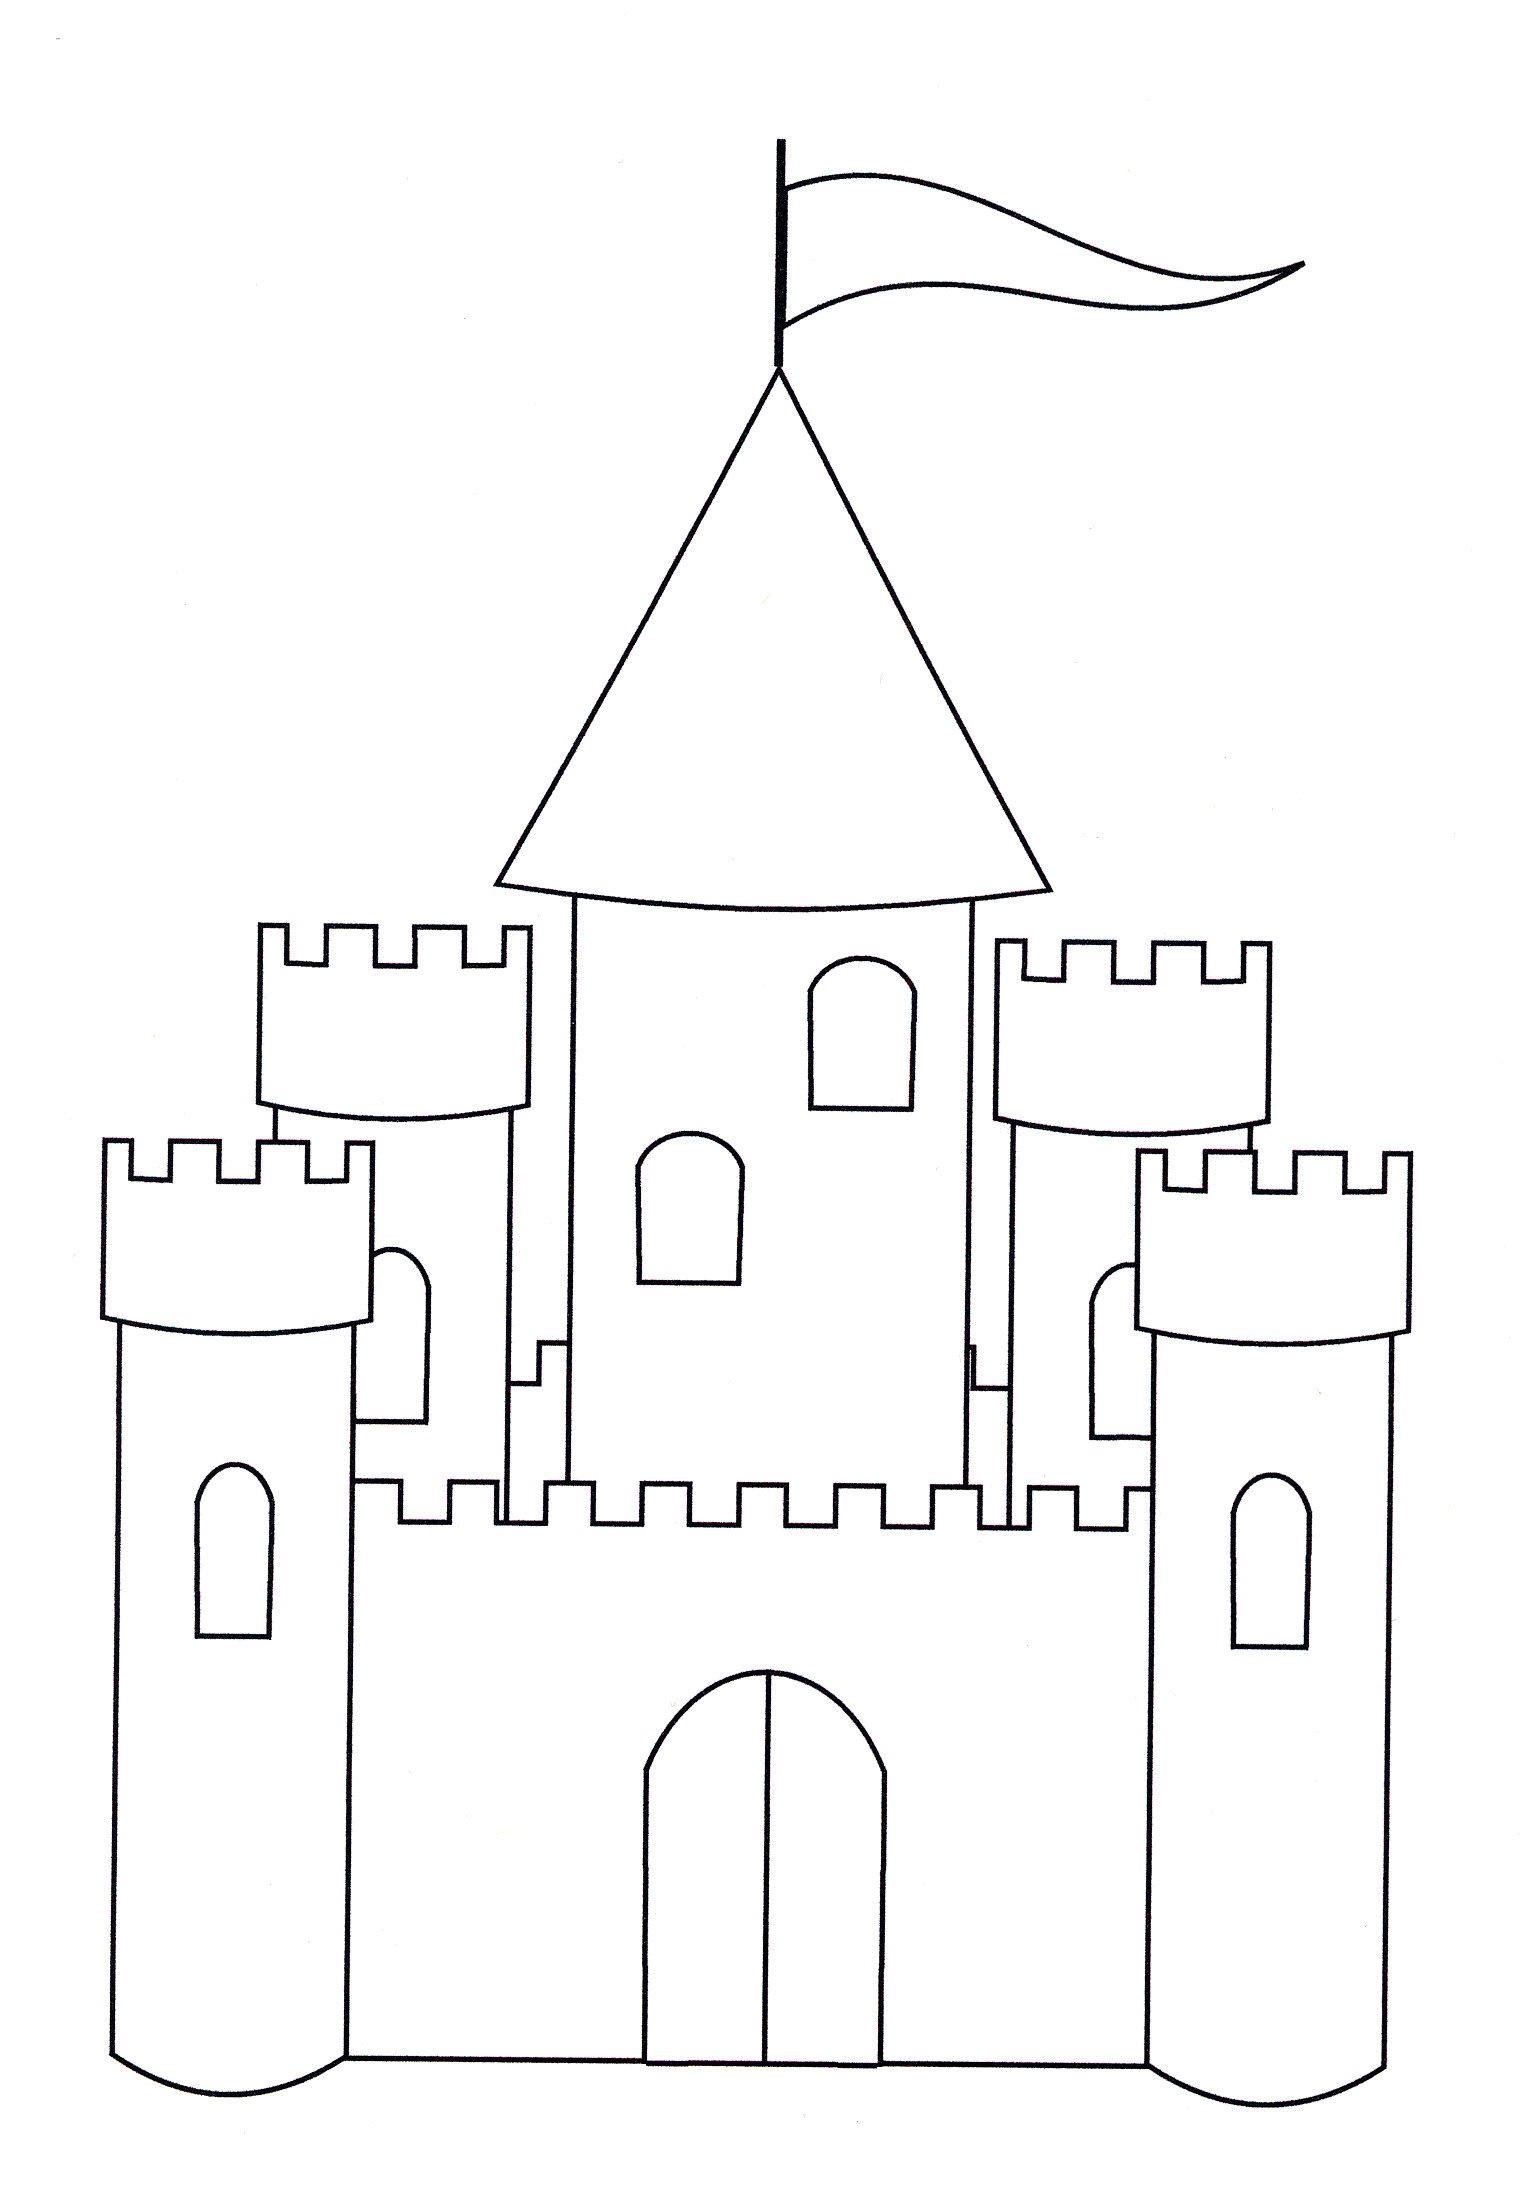 Рисование средневекового замка